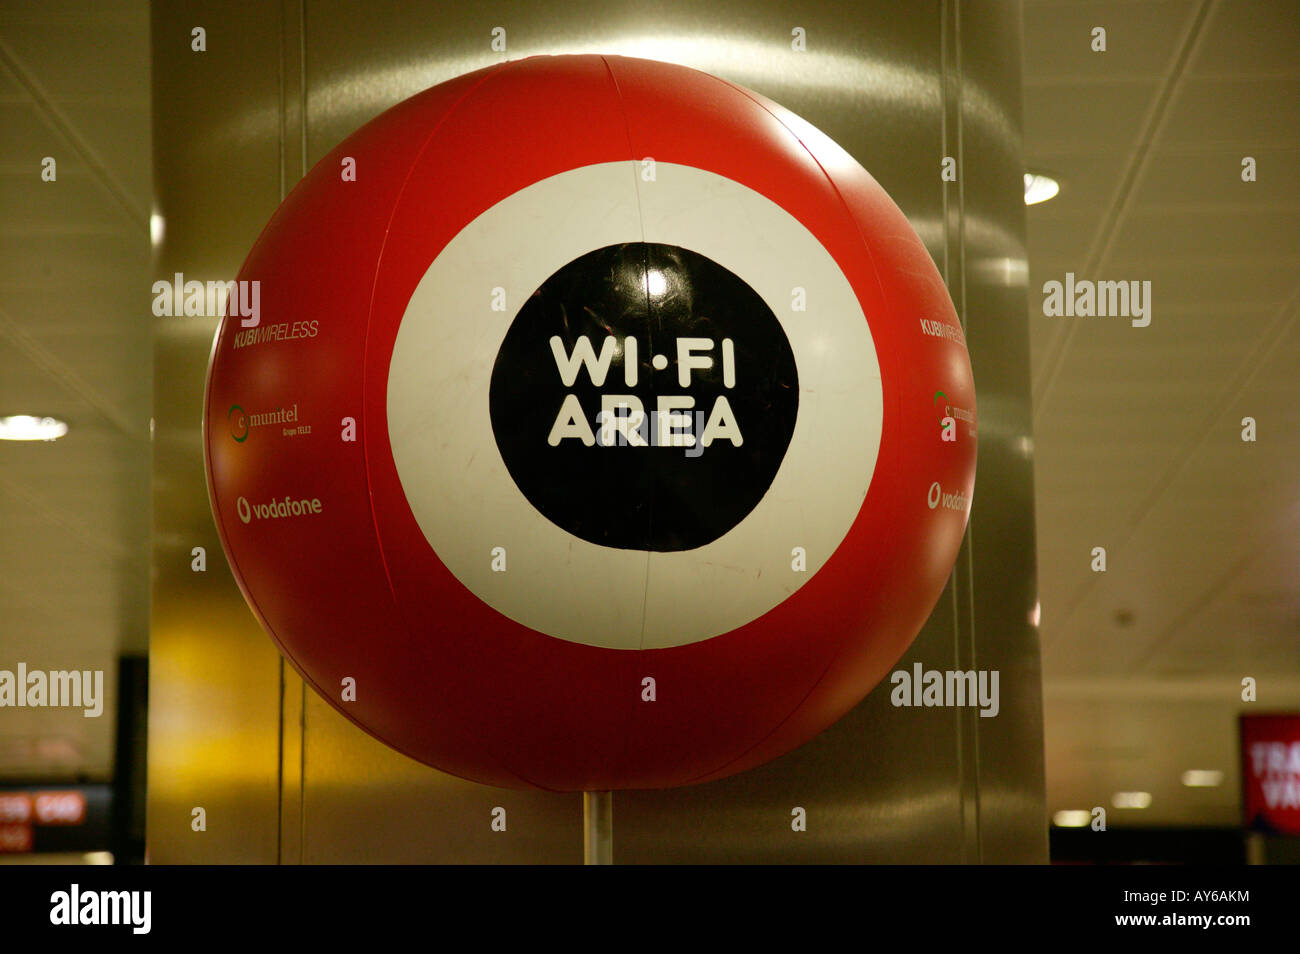 Wi-fi, wifi, banda ancha hotspot firmar, Madrid, España Foto de stock